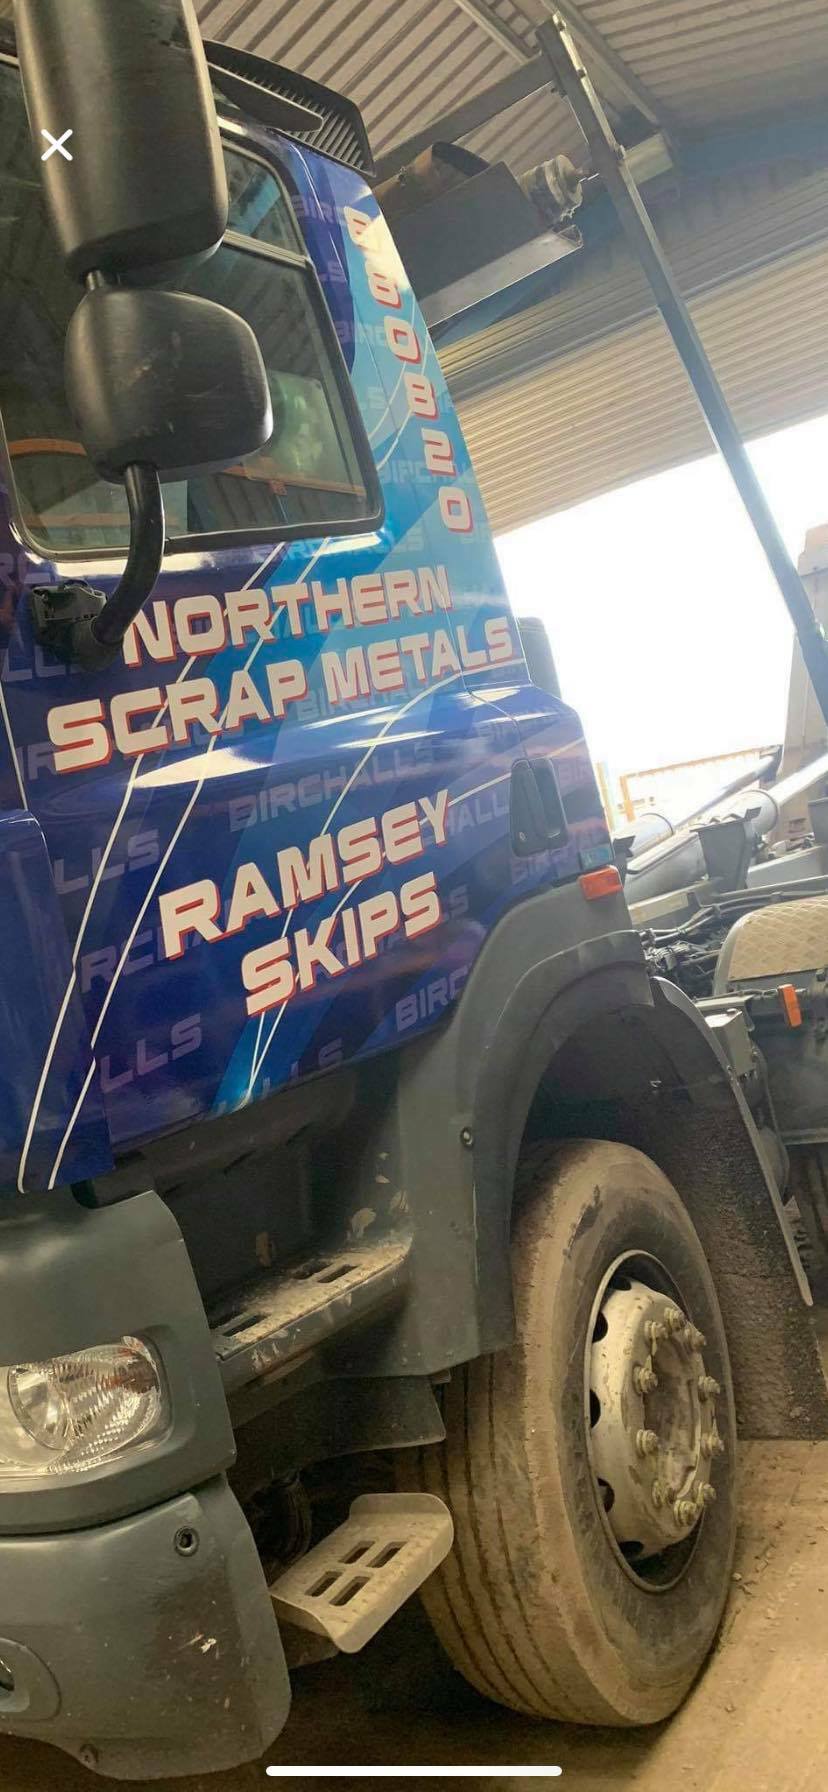  Northern Scrap Metals & Ramsey Skips